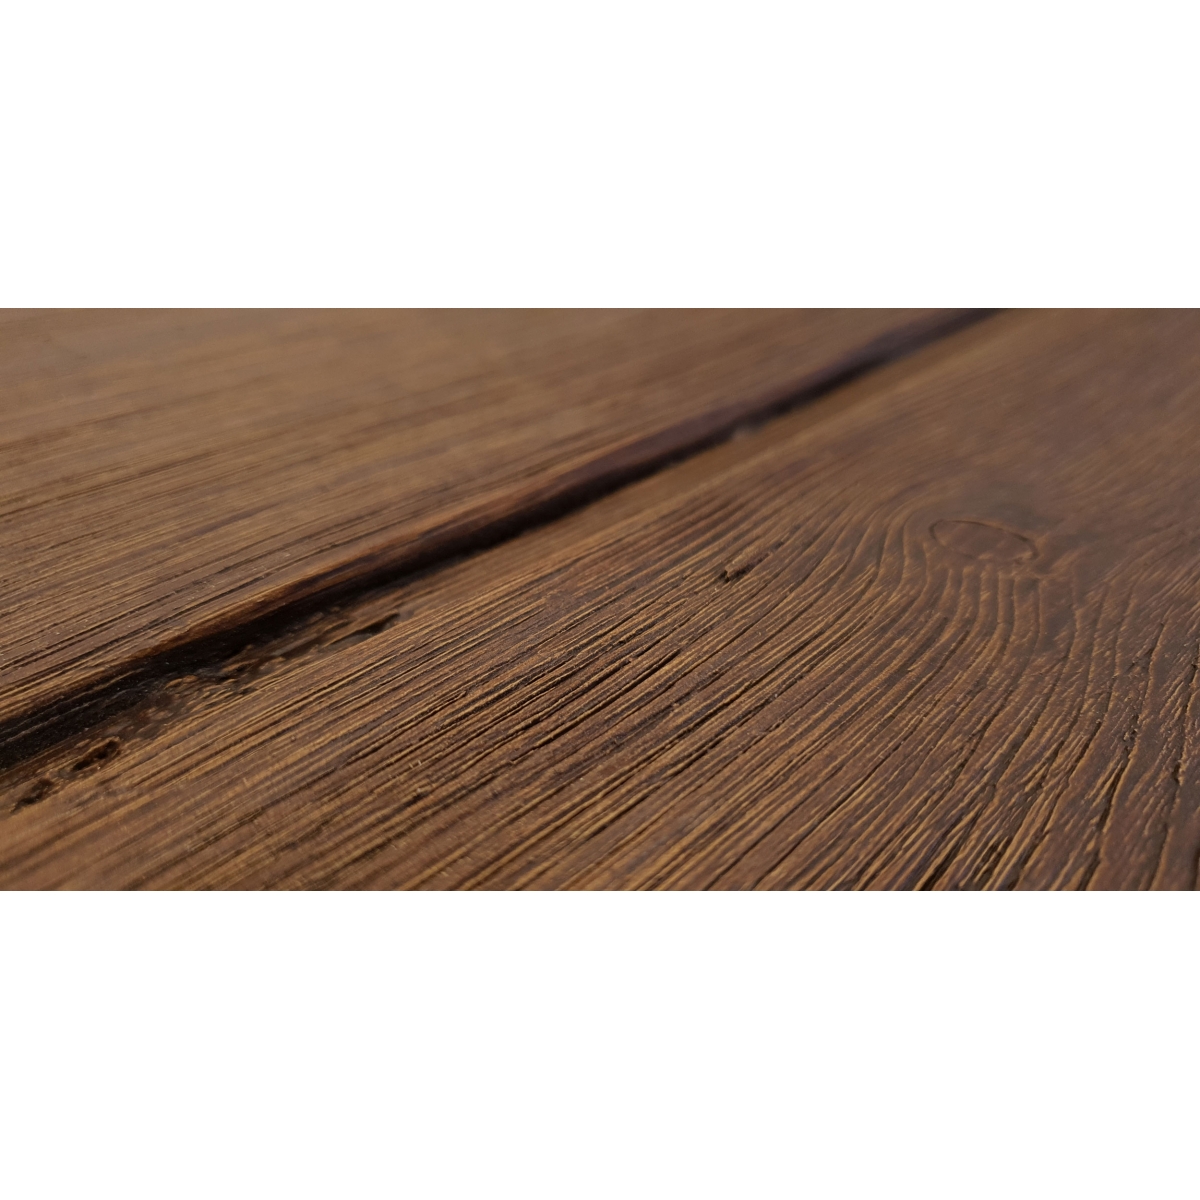 Panel rústico de tres lamas imitación madera de 300x62cm La Viguería